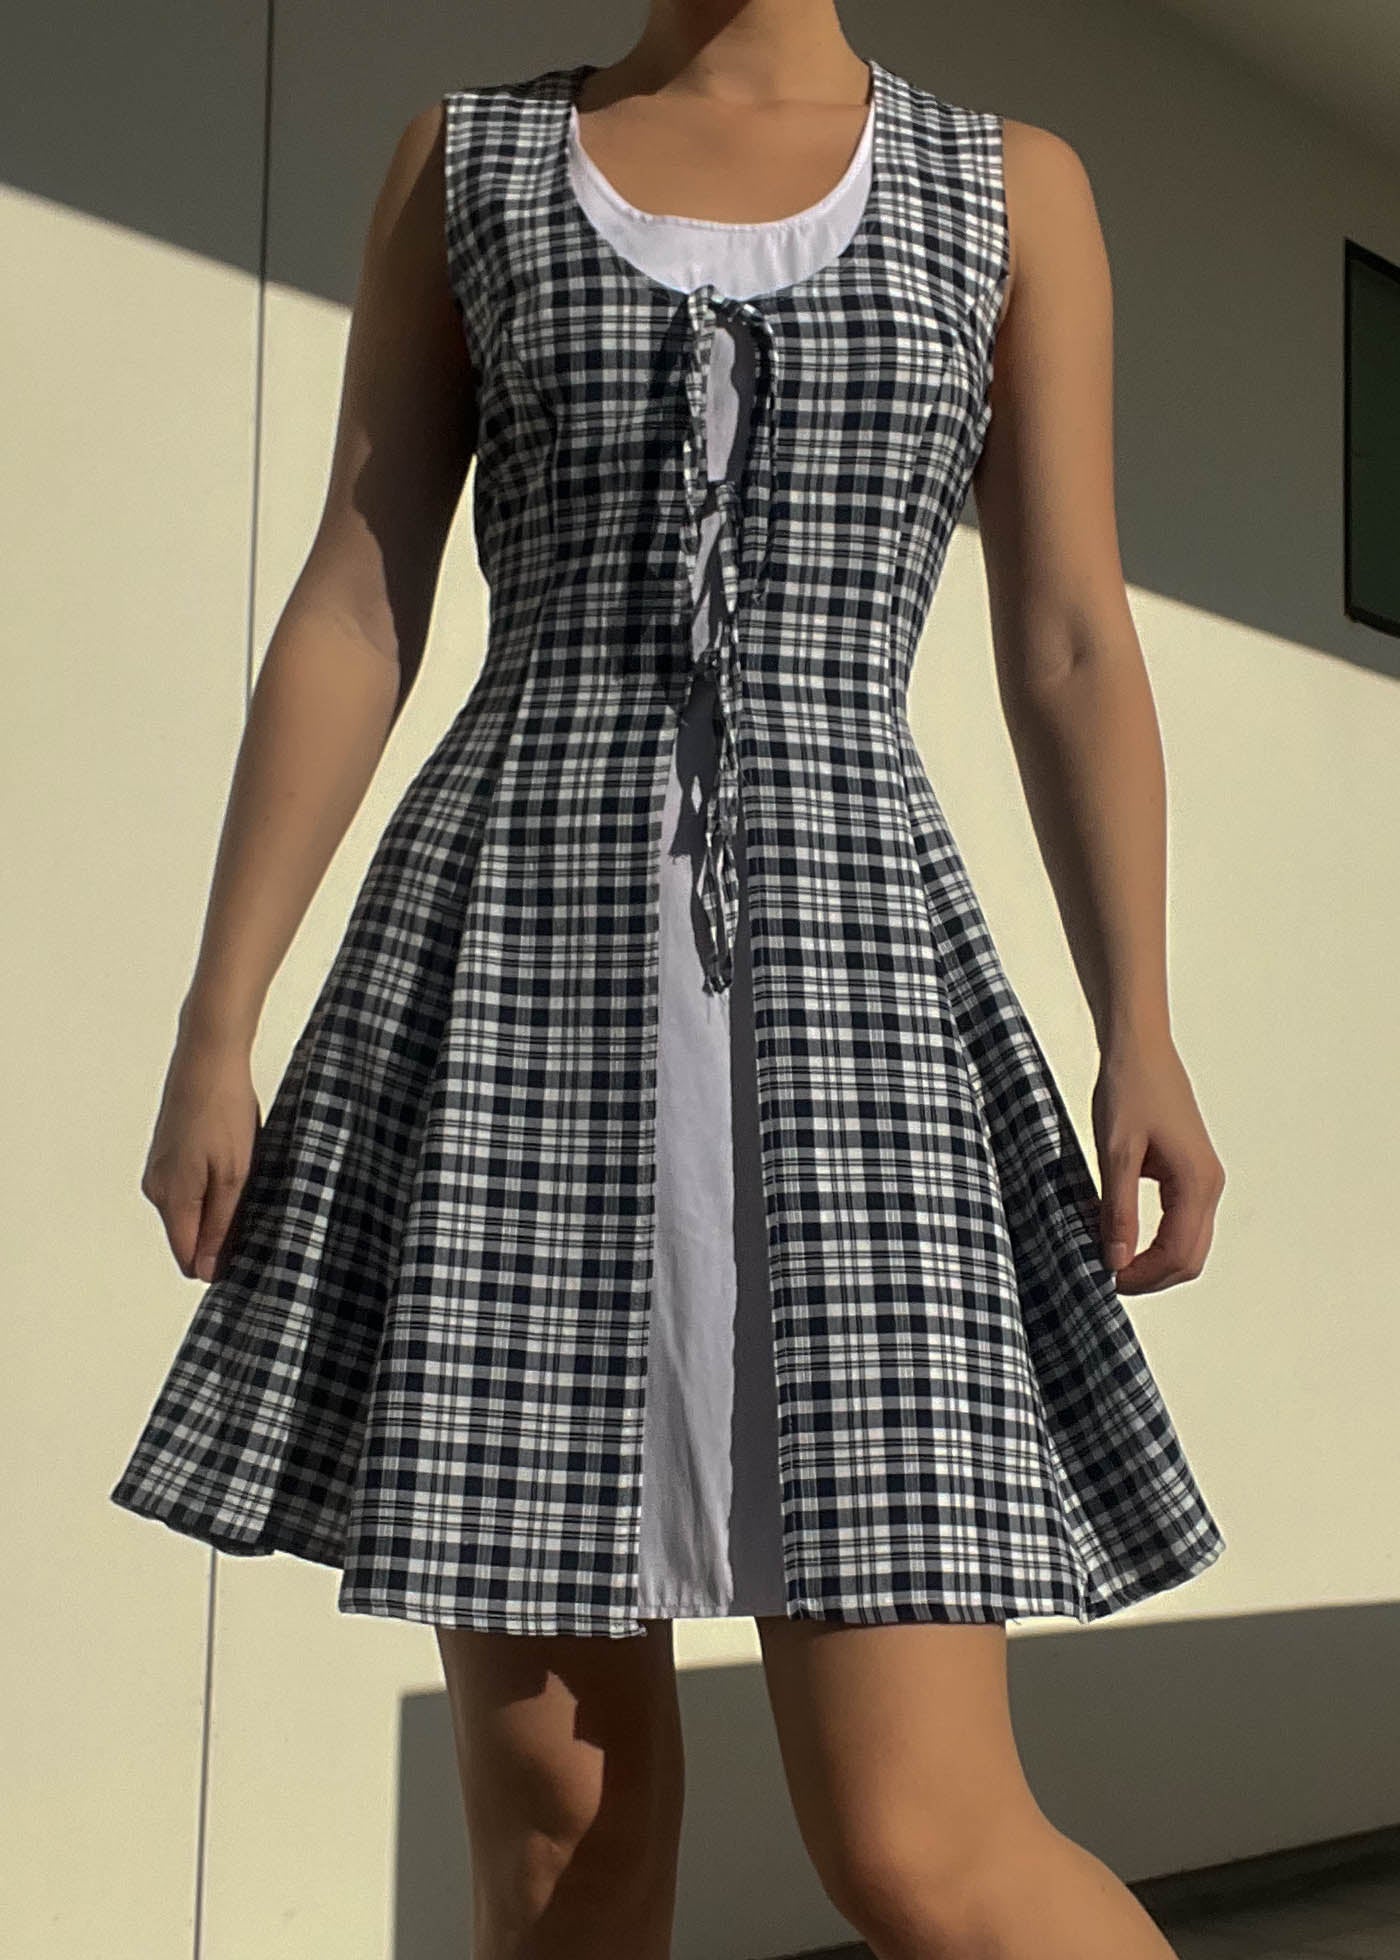 90’s Layered Plaid Mini Dress (M-L)